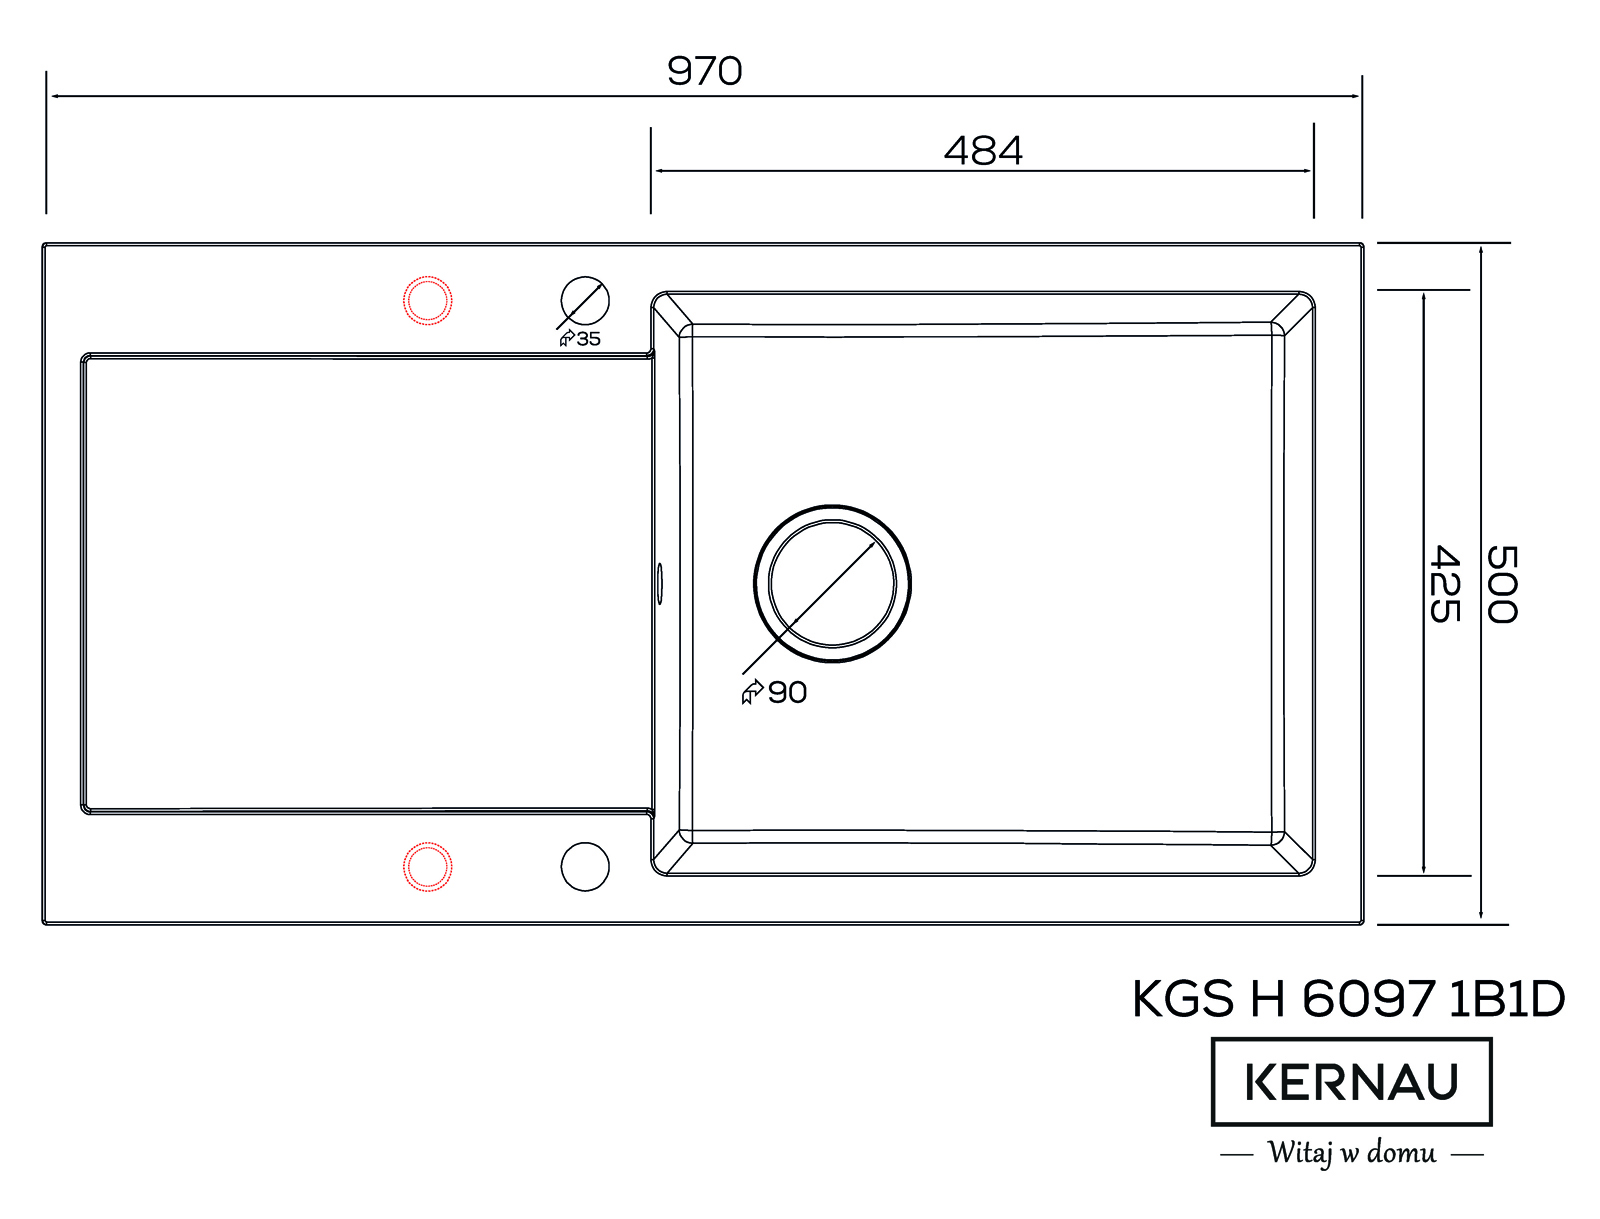 Кухонная мойка KERNAU KGS H 6097 1B1D OLD WHITE